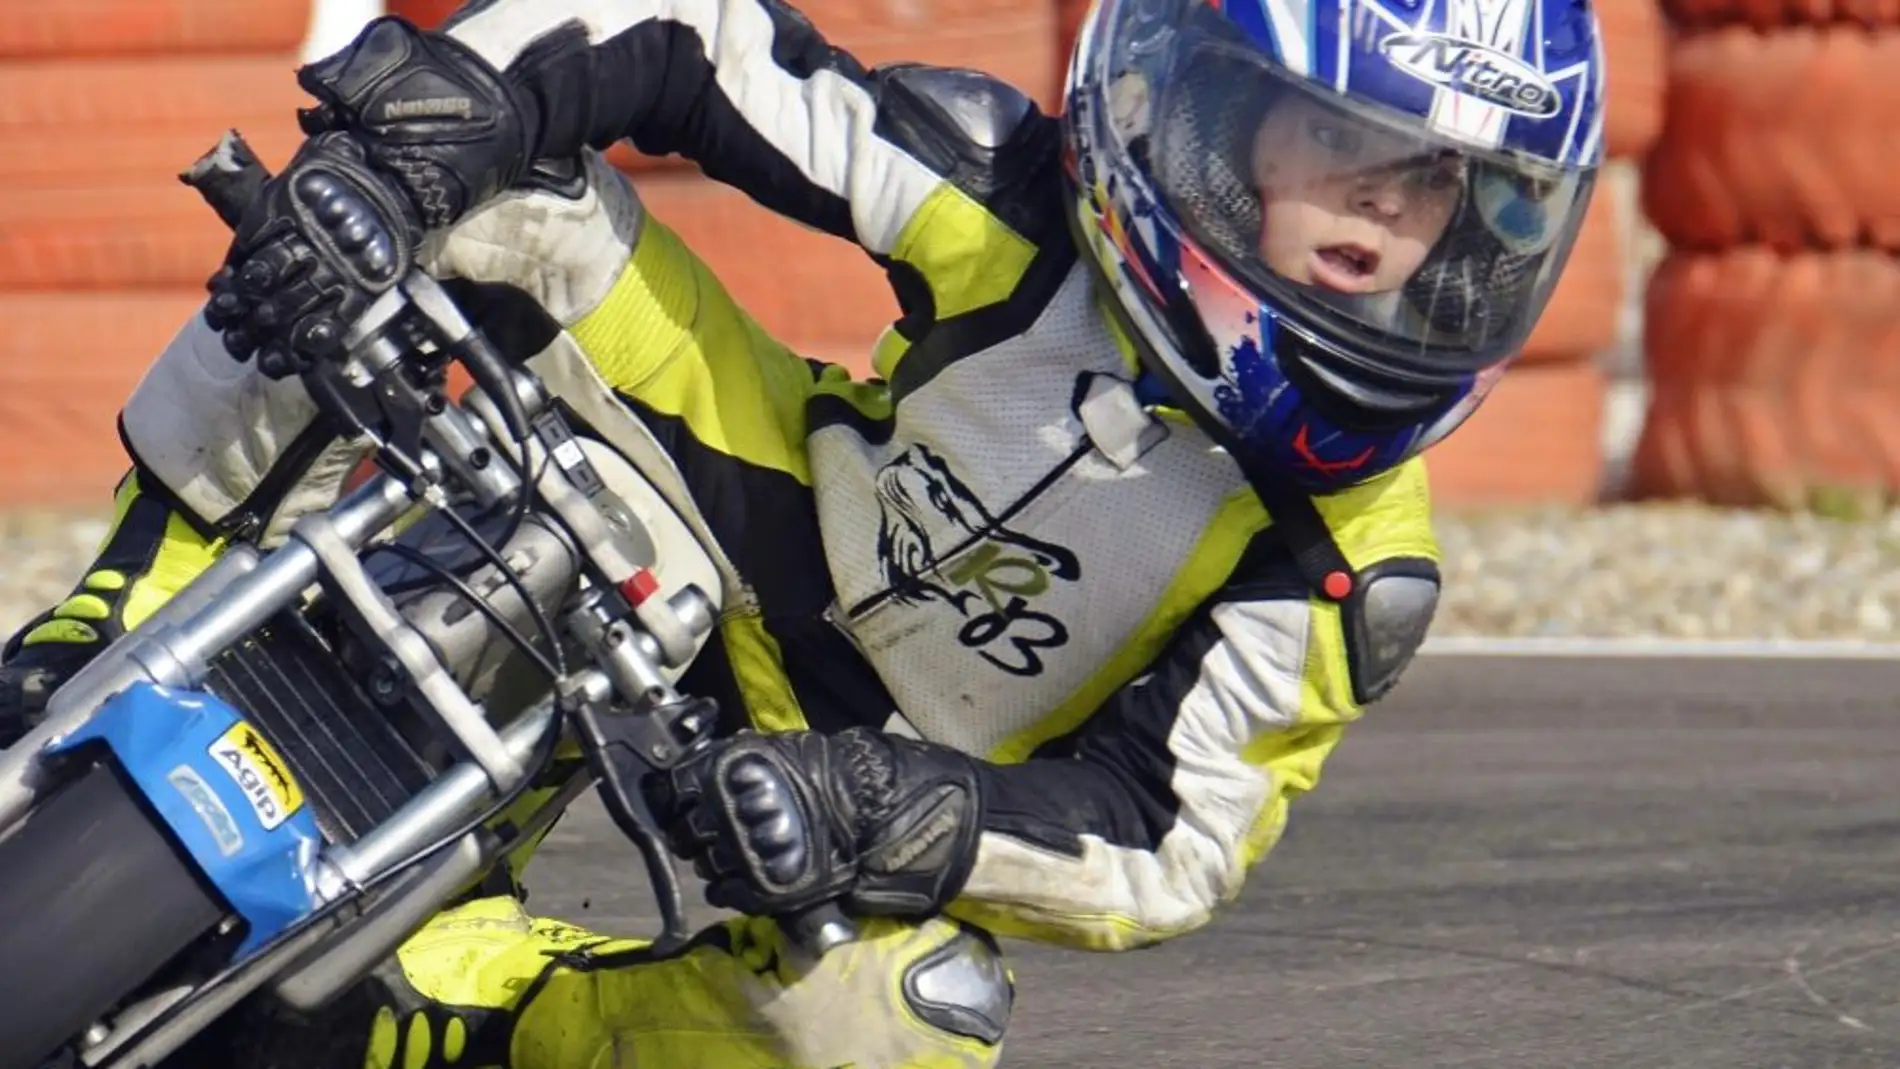 Competición de motos de categoría infantil